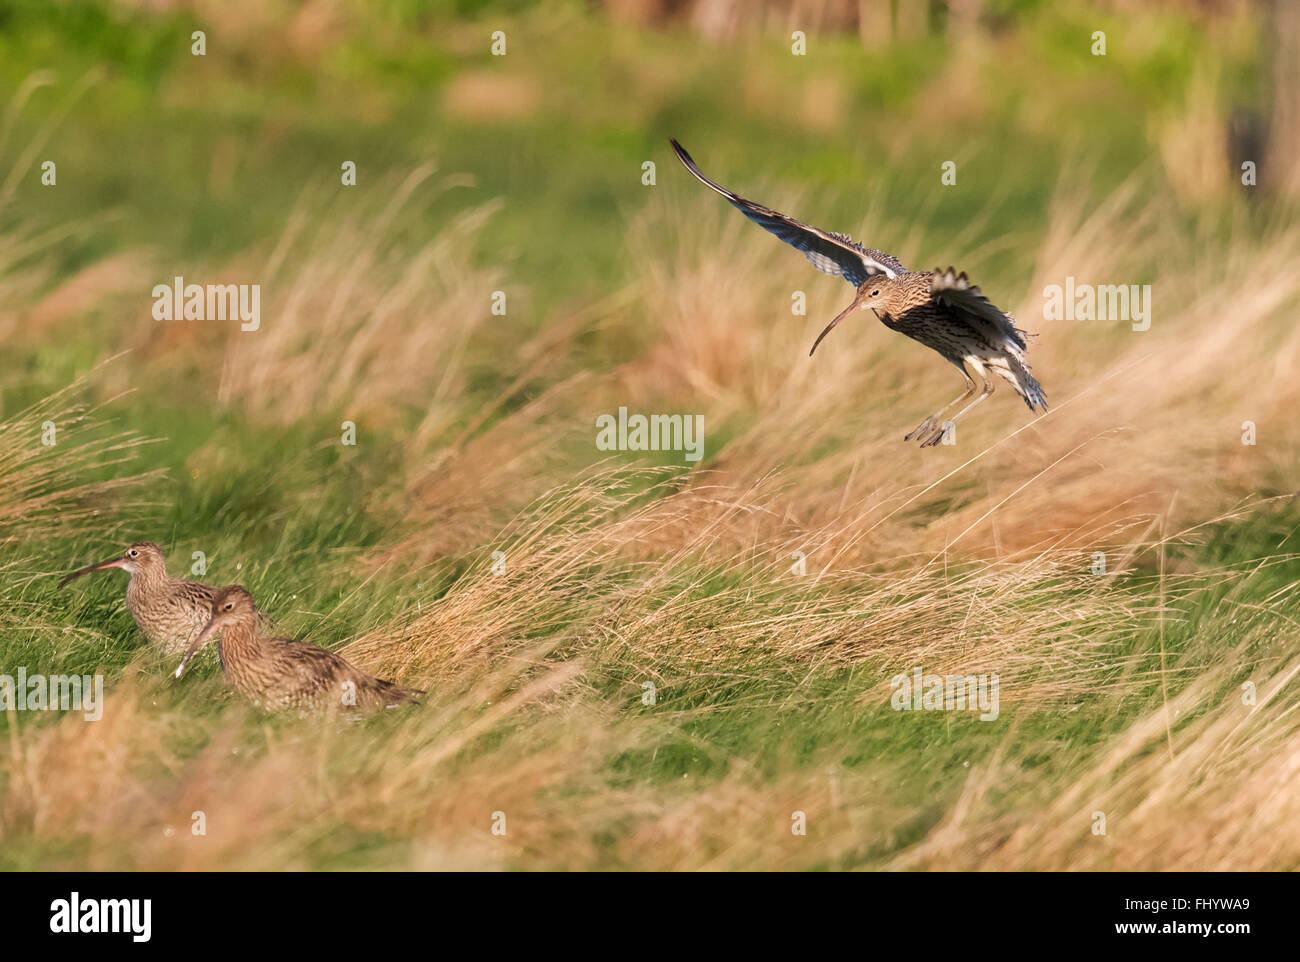 Curlew, Numenius arquata landing on rough grasses, Norfolk Stock Photo